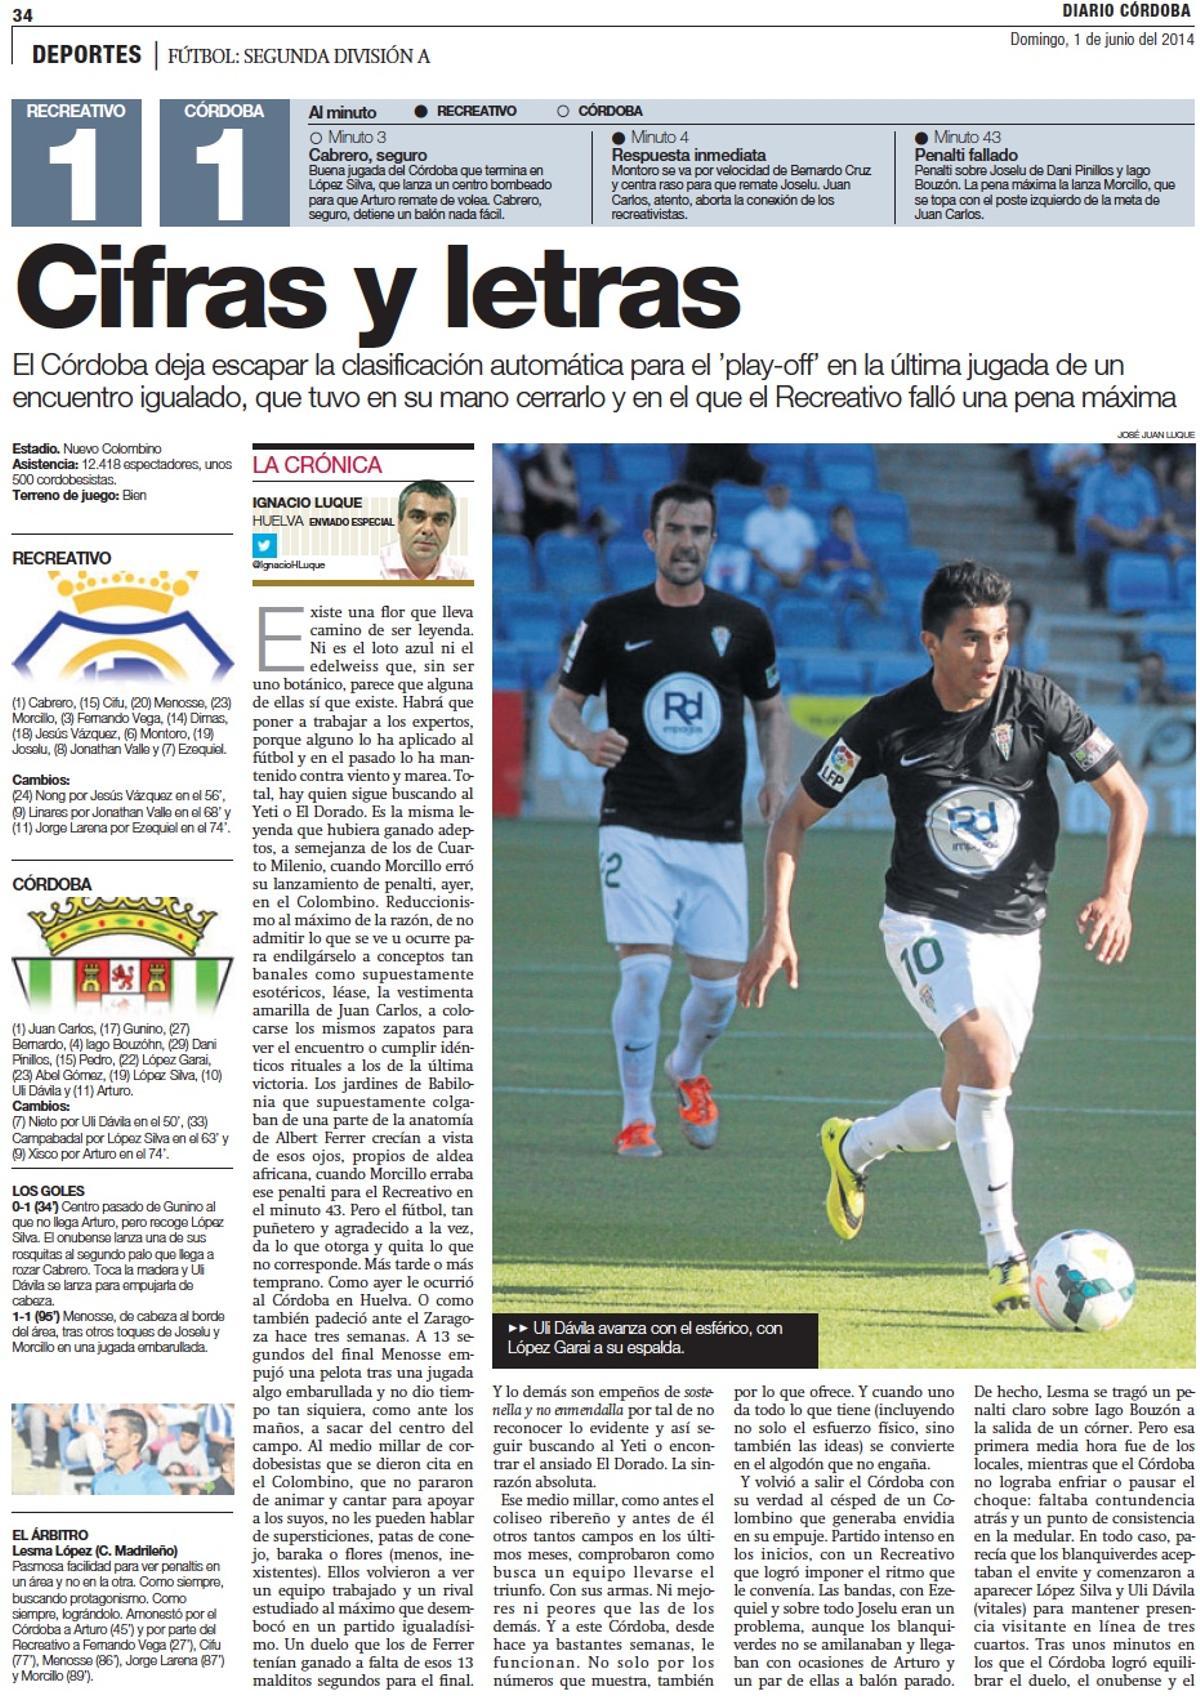 Crónica del Recreativo - Córdoba CF de la campaña 2013-14, la del play off y posterior ascenso de los blanquiverdes a Primera.